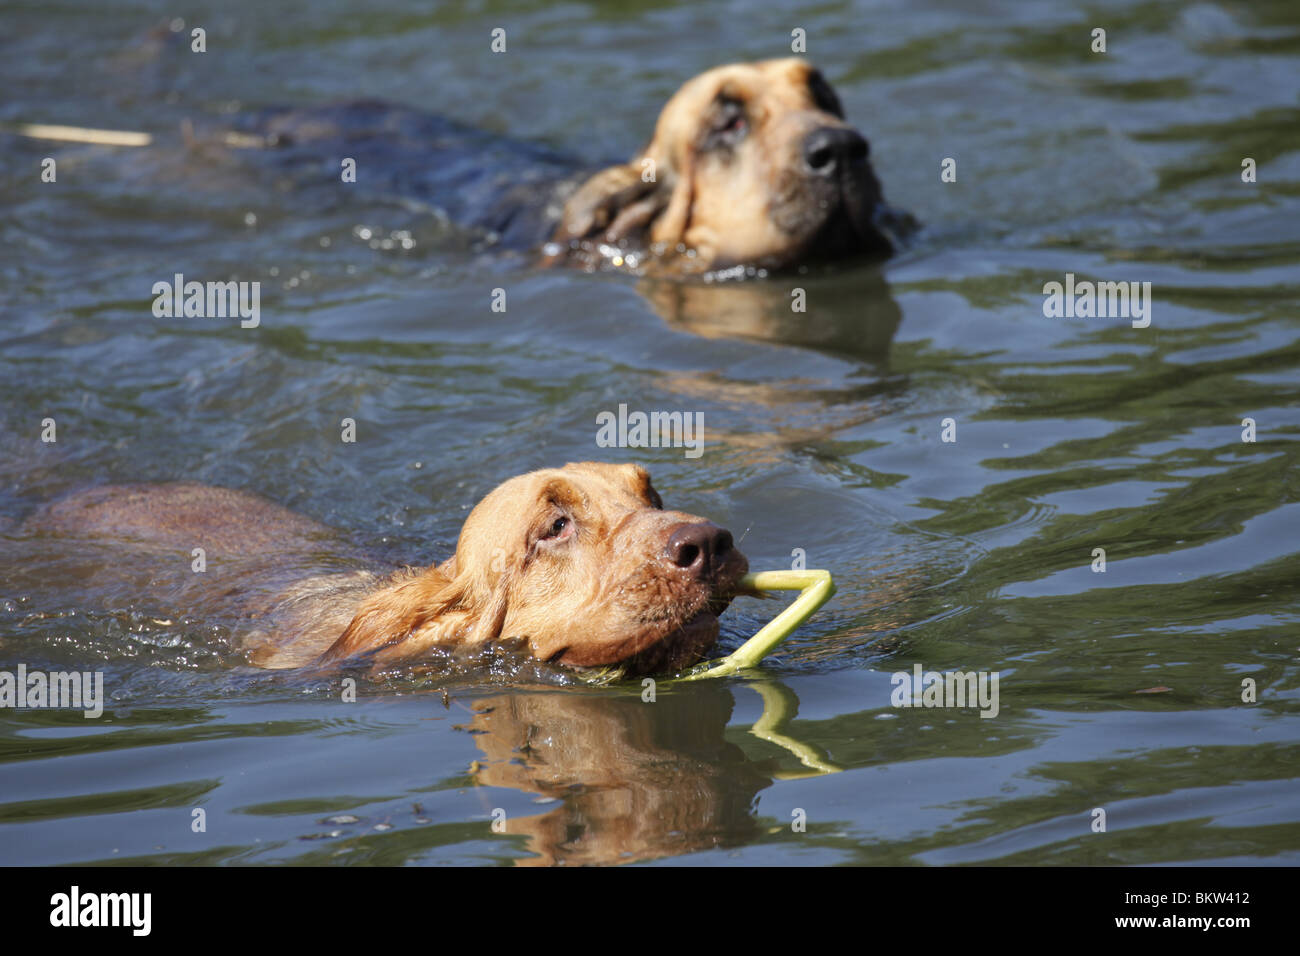 schwimmender Bluthund / swimming Bloodhound Stock Photo